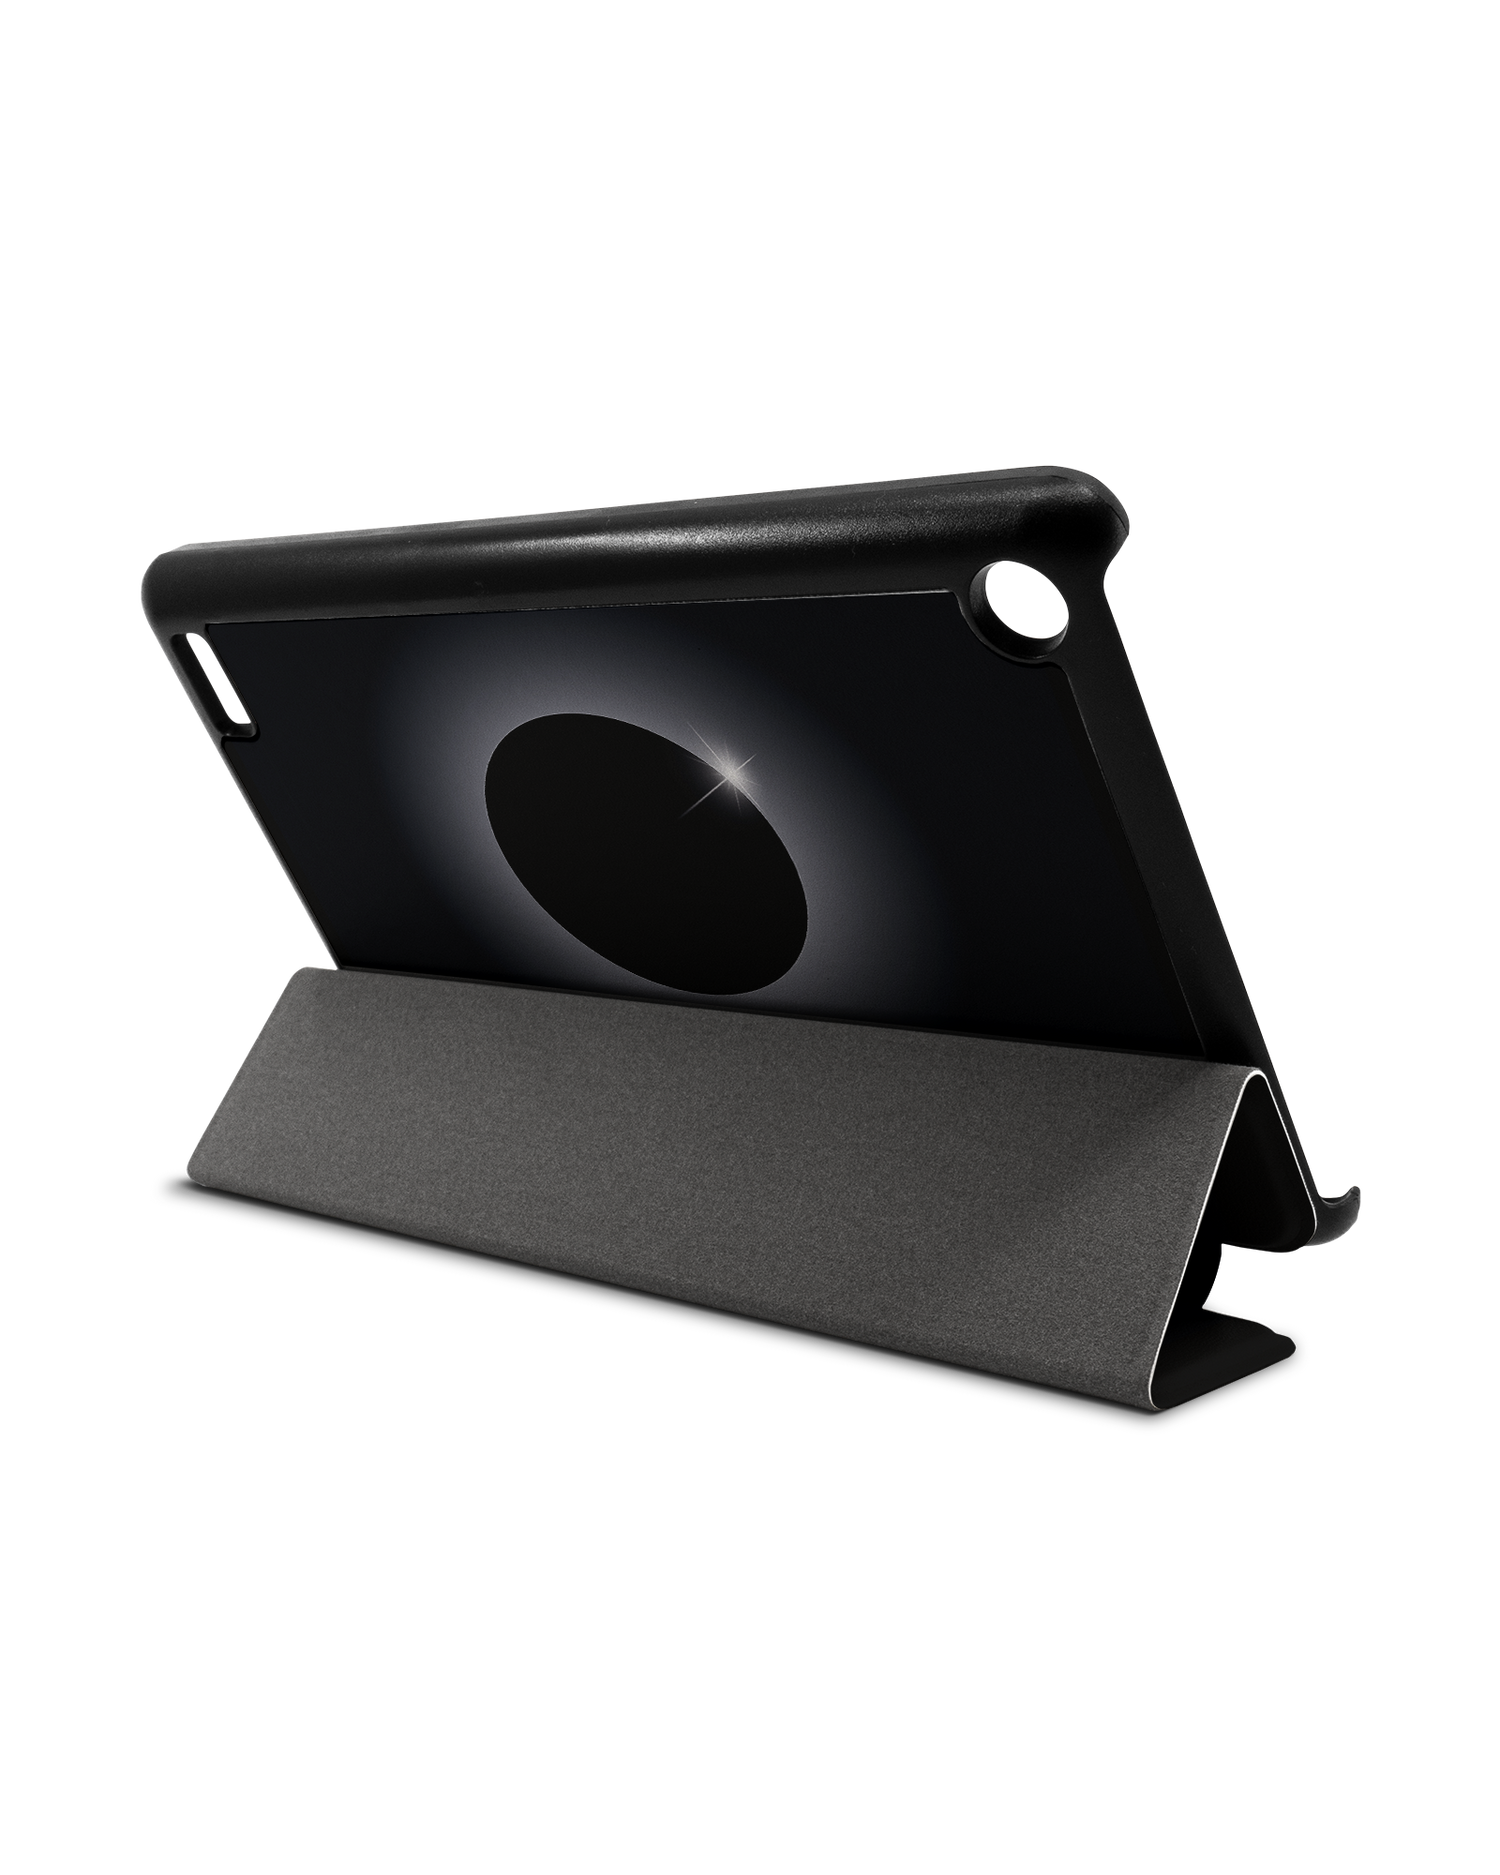 Eclipse Tablet Smart Case für Amazon Fire 7: Aufgestellt im Querformat